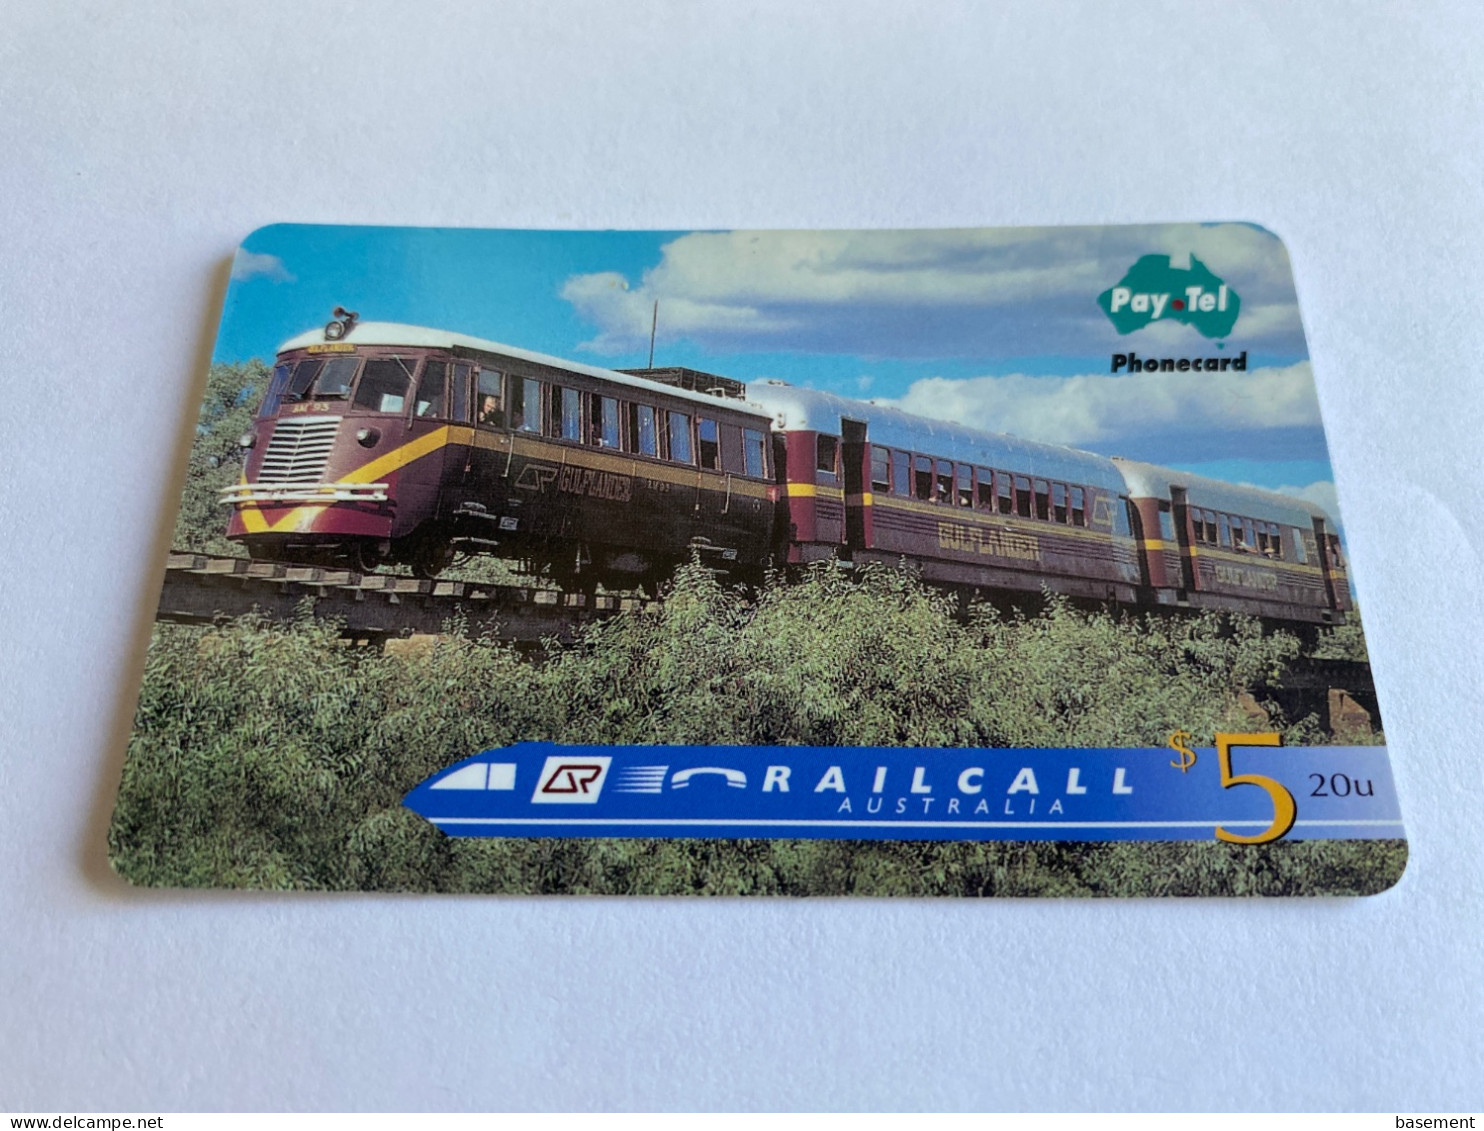 1:030 - Australia Pay Tel RailCall Train - Australien